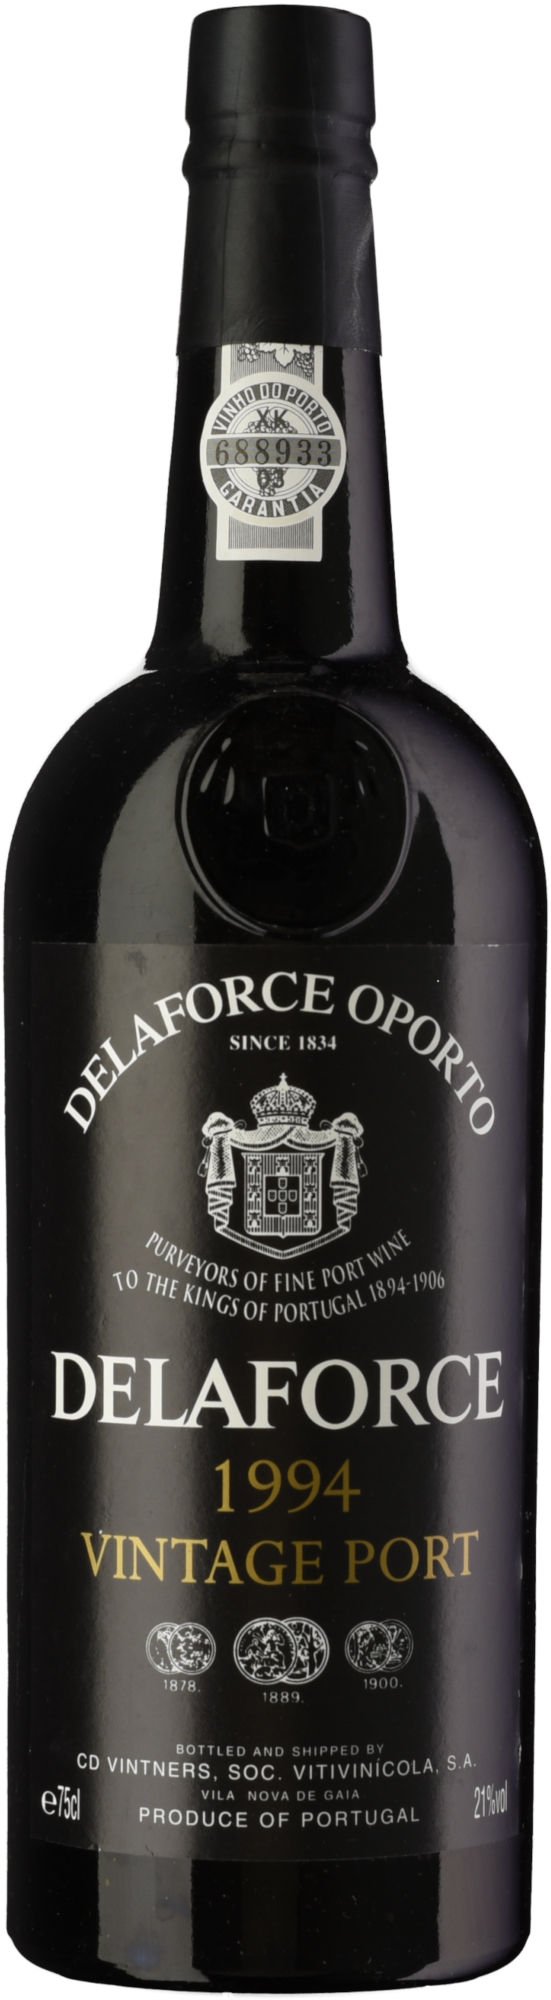 Delaforce-Vintage-Port-1994